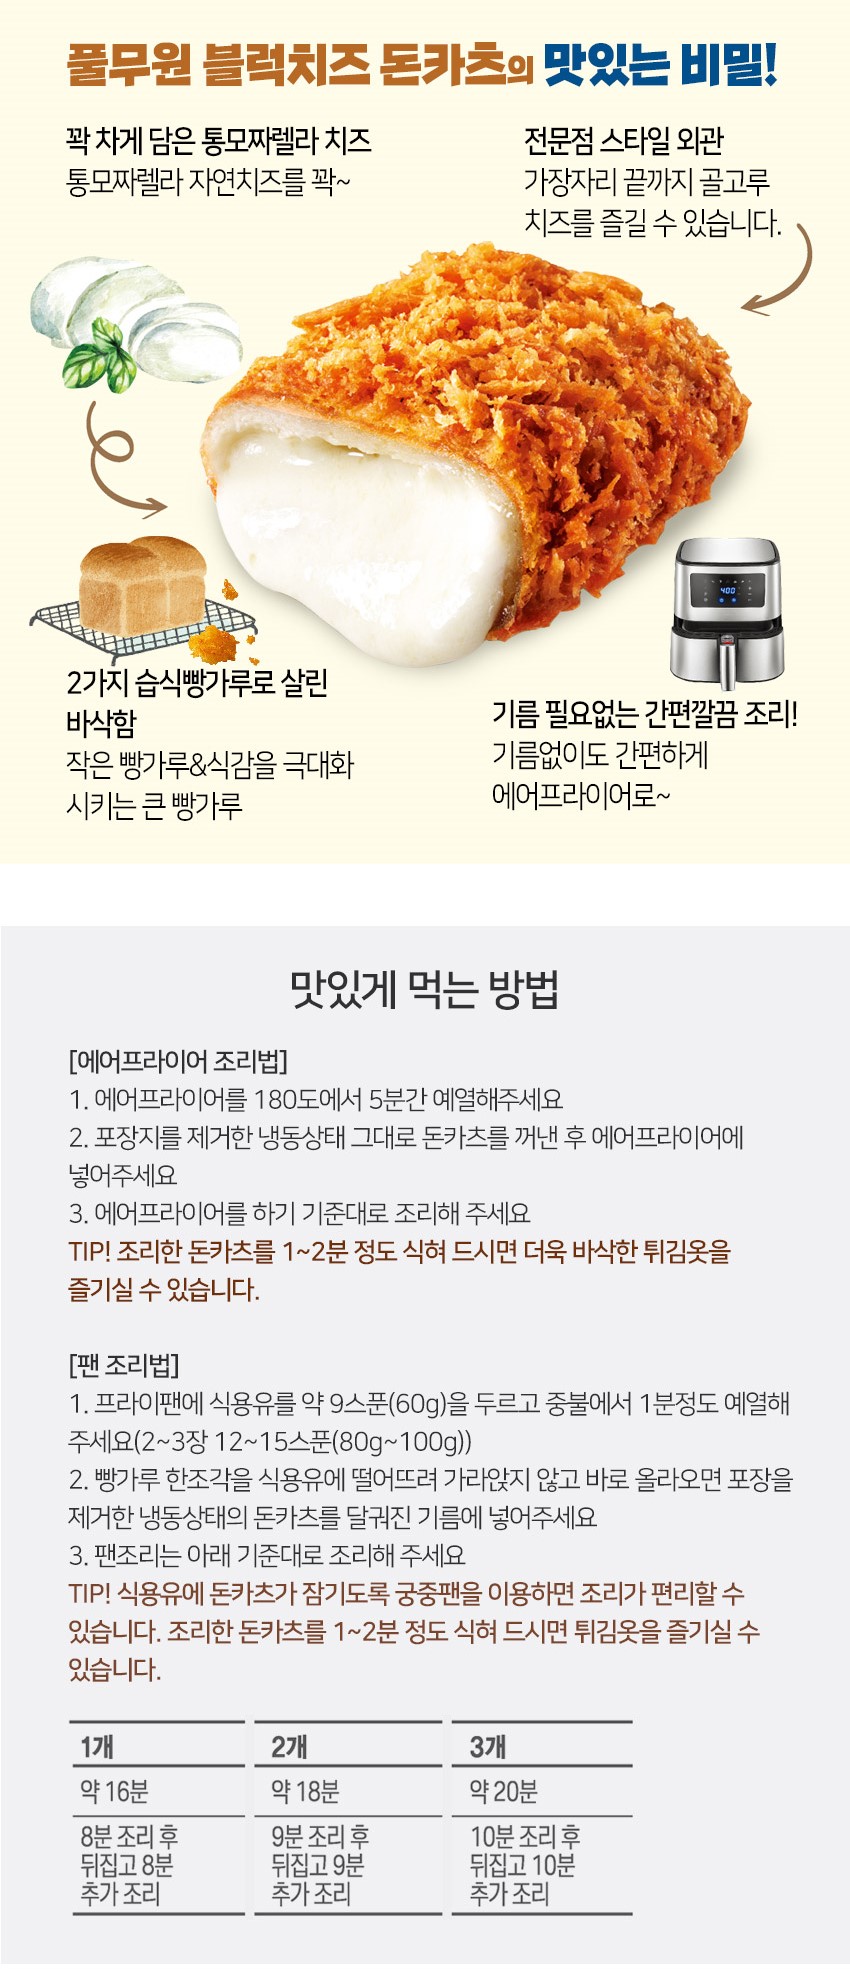 韓國食品-[풀무원] 블럭치즈 돈카츠 420g